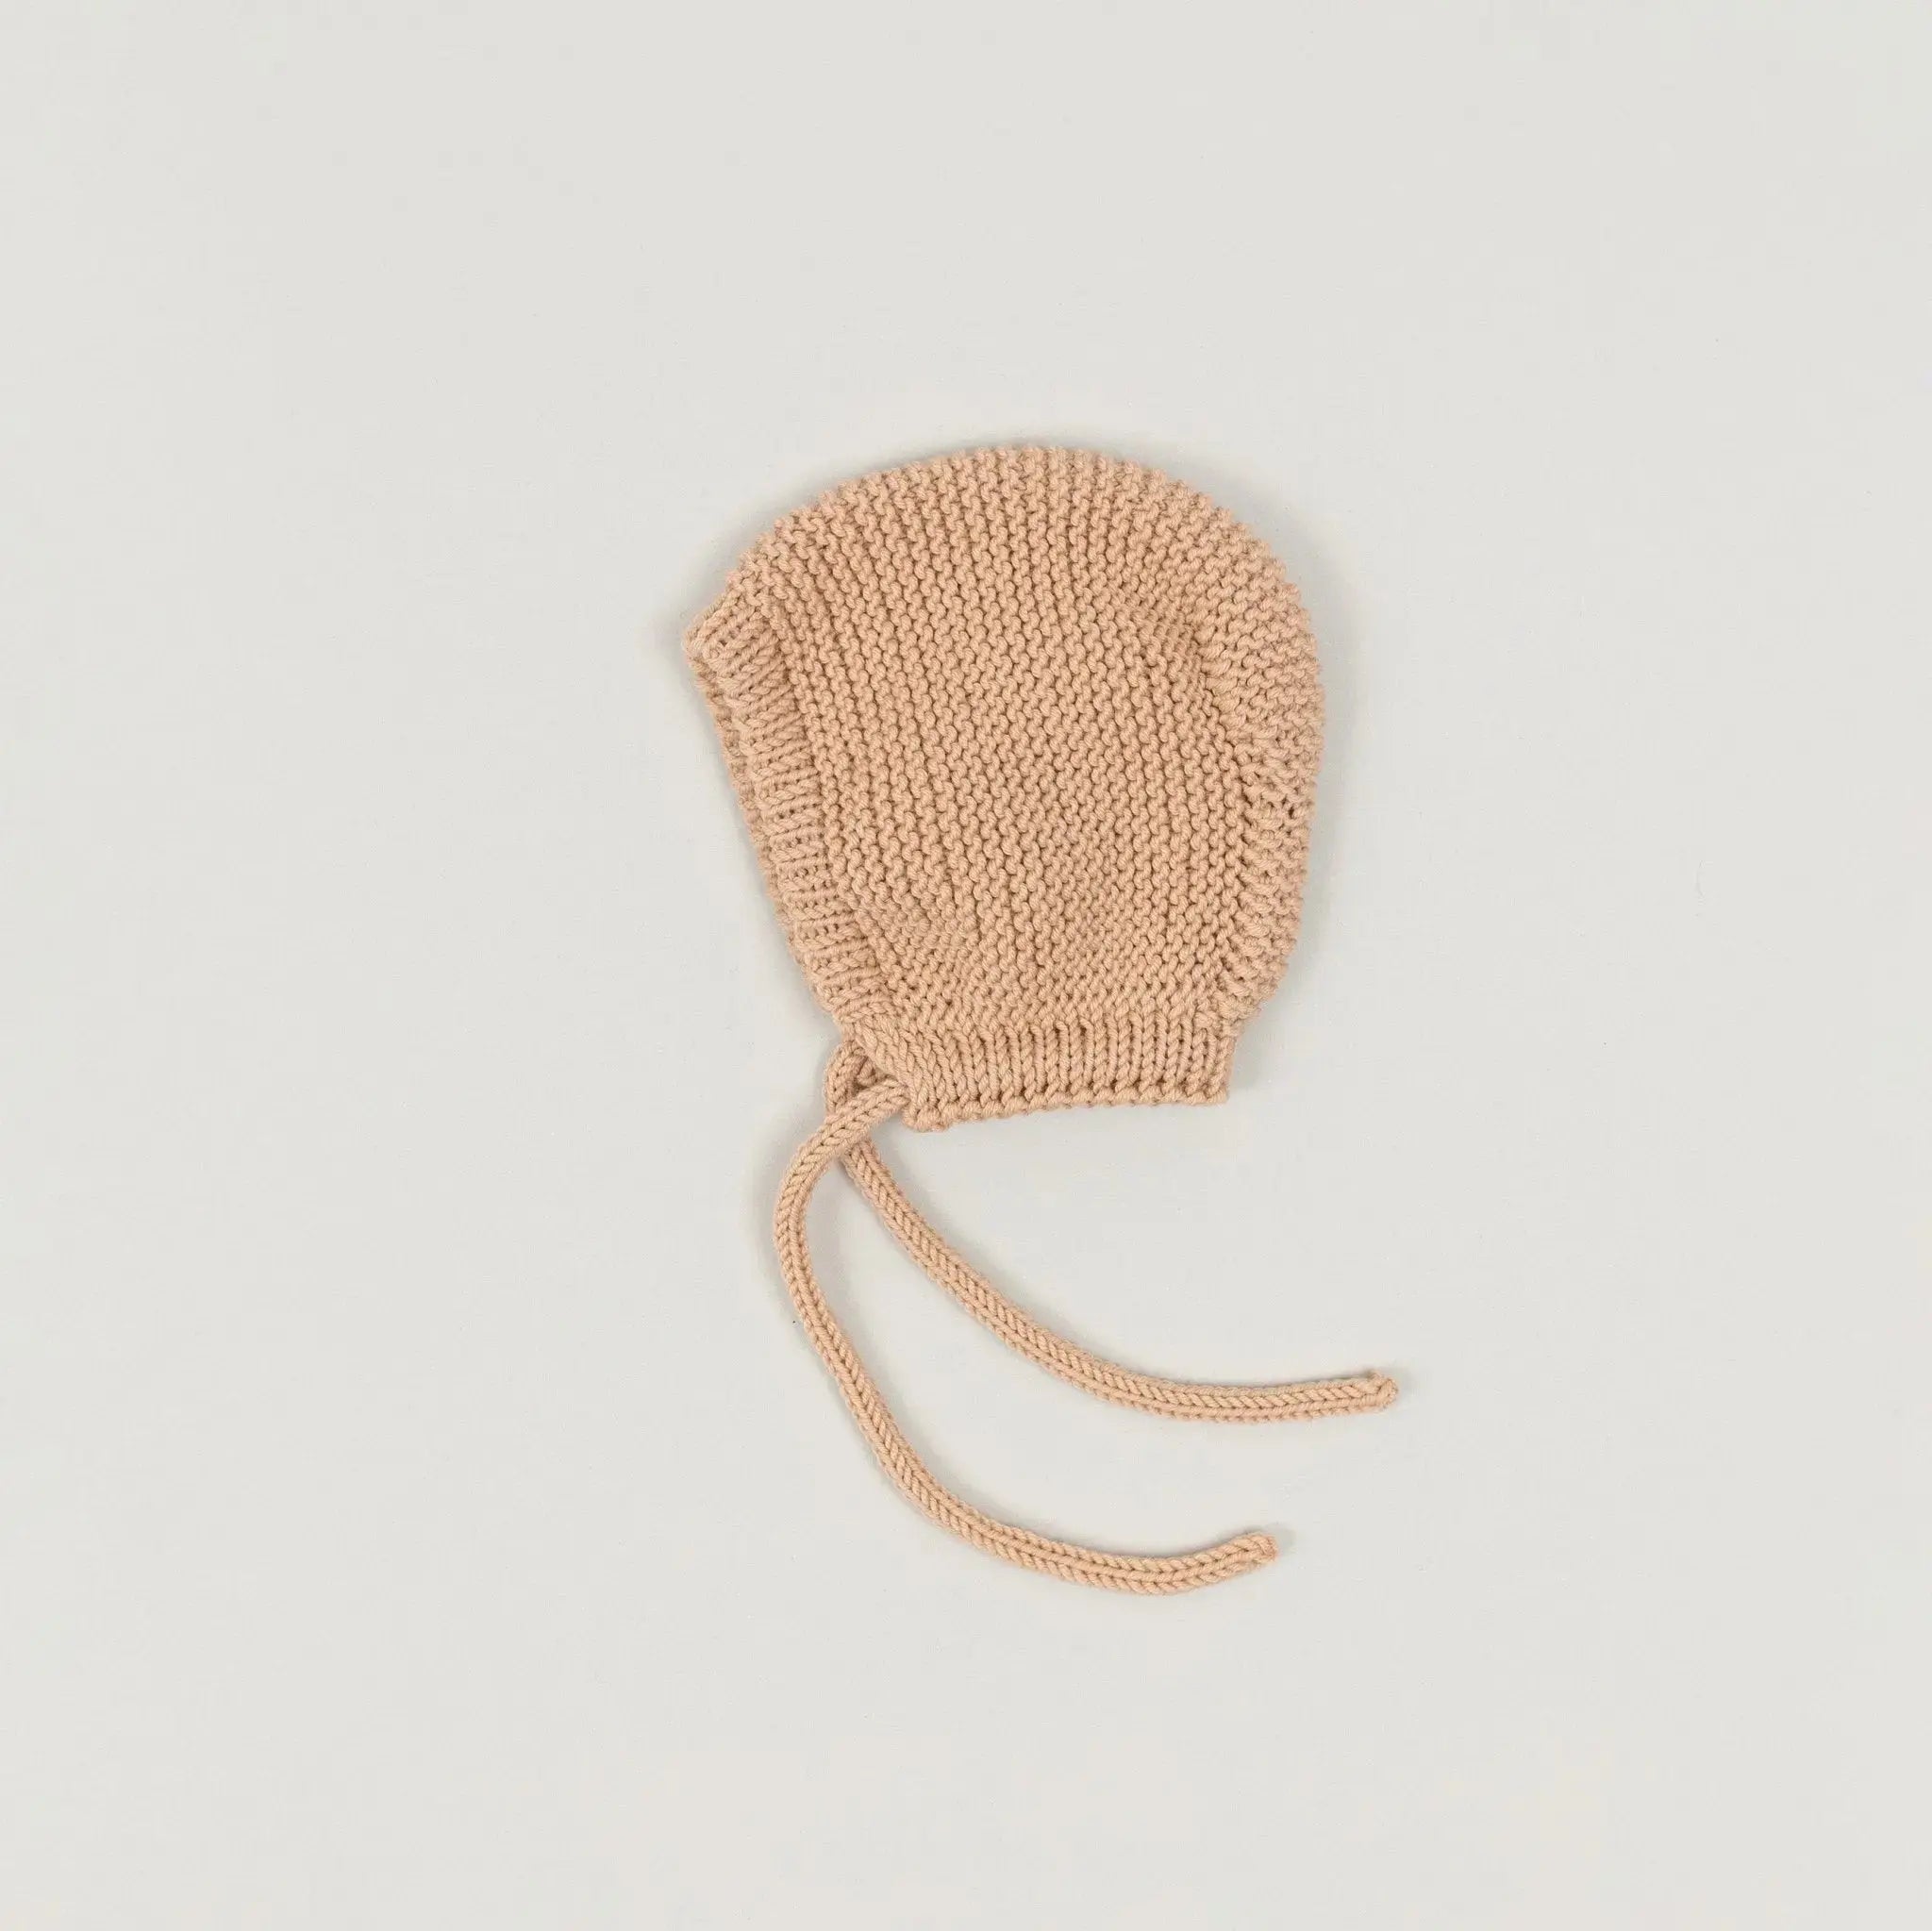 Handgestrickte Babyhaube aus Wolle